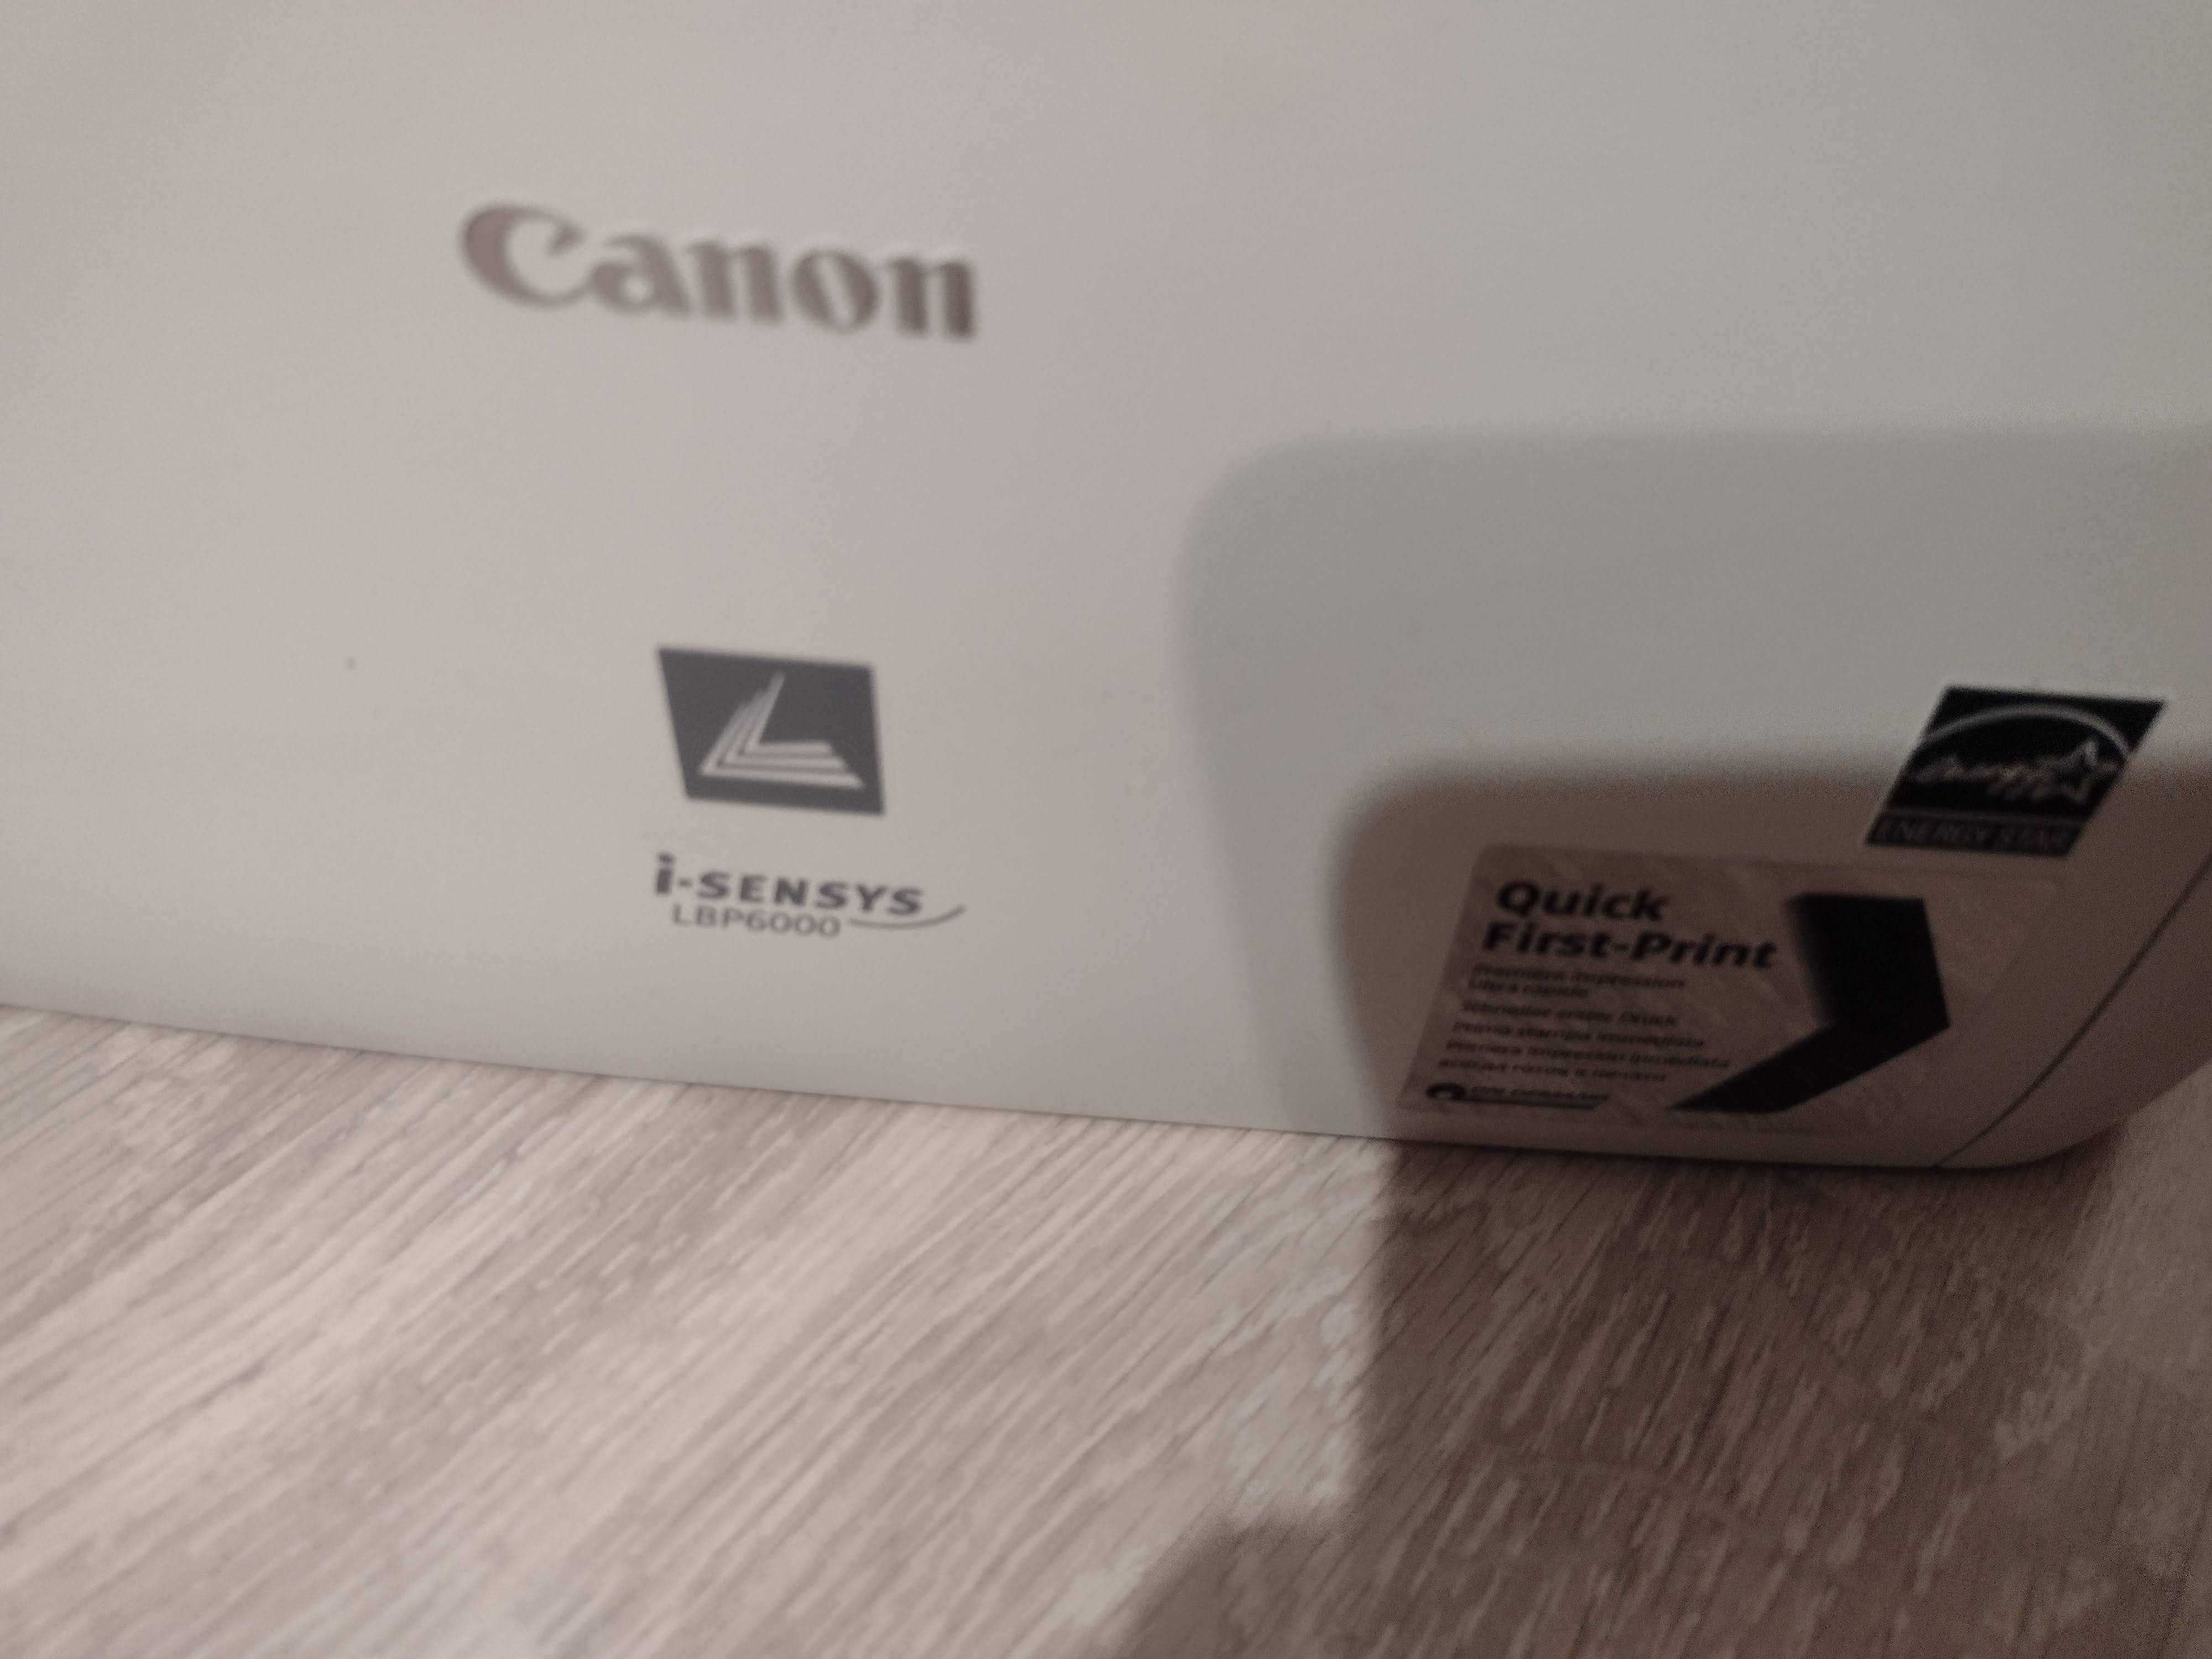 Printer LaserJet Canon LBP6000, monocrom, USB, nou